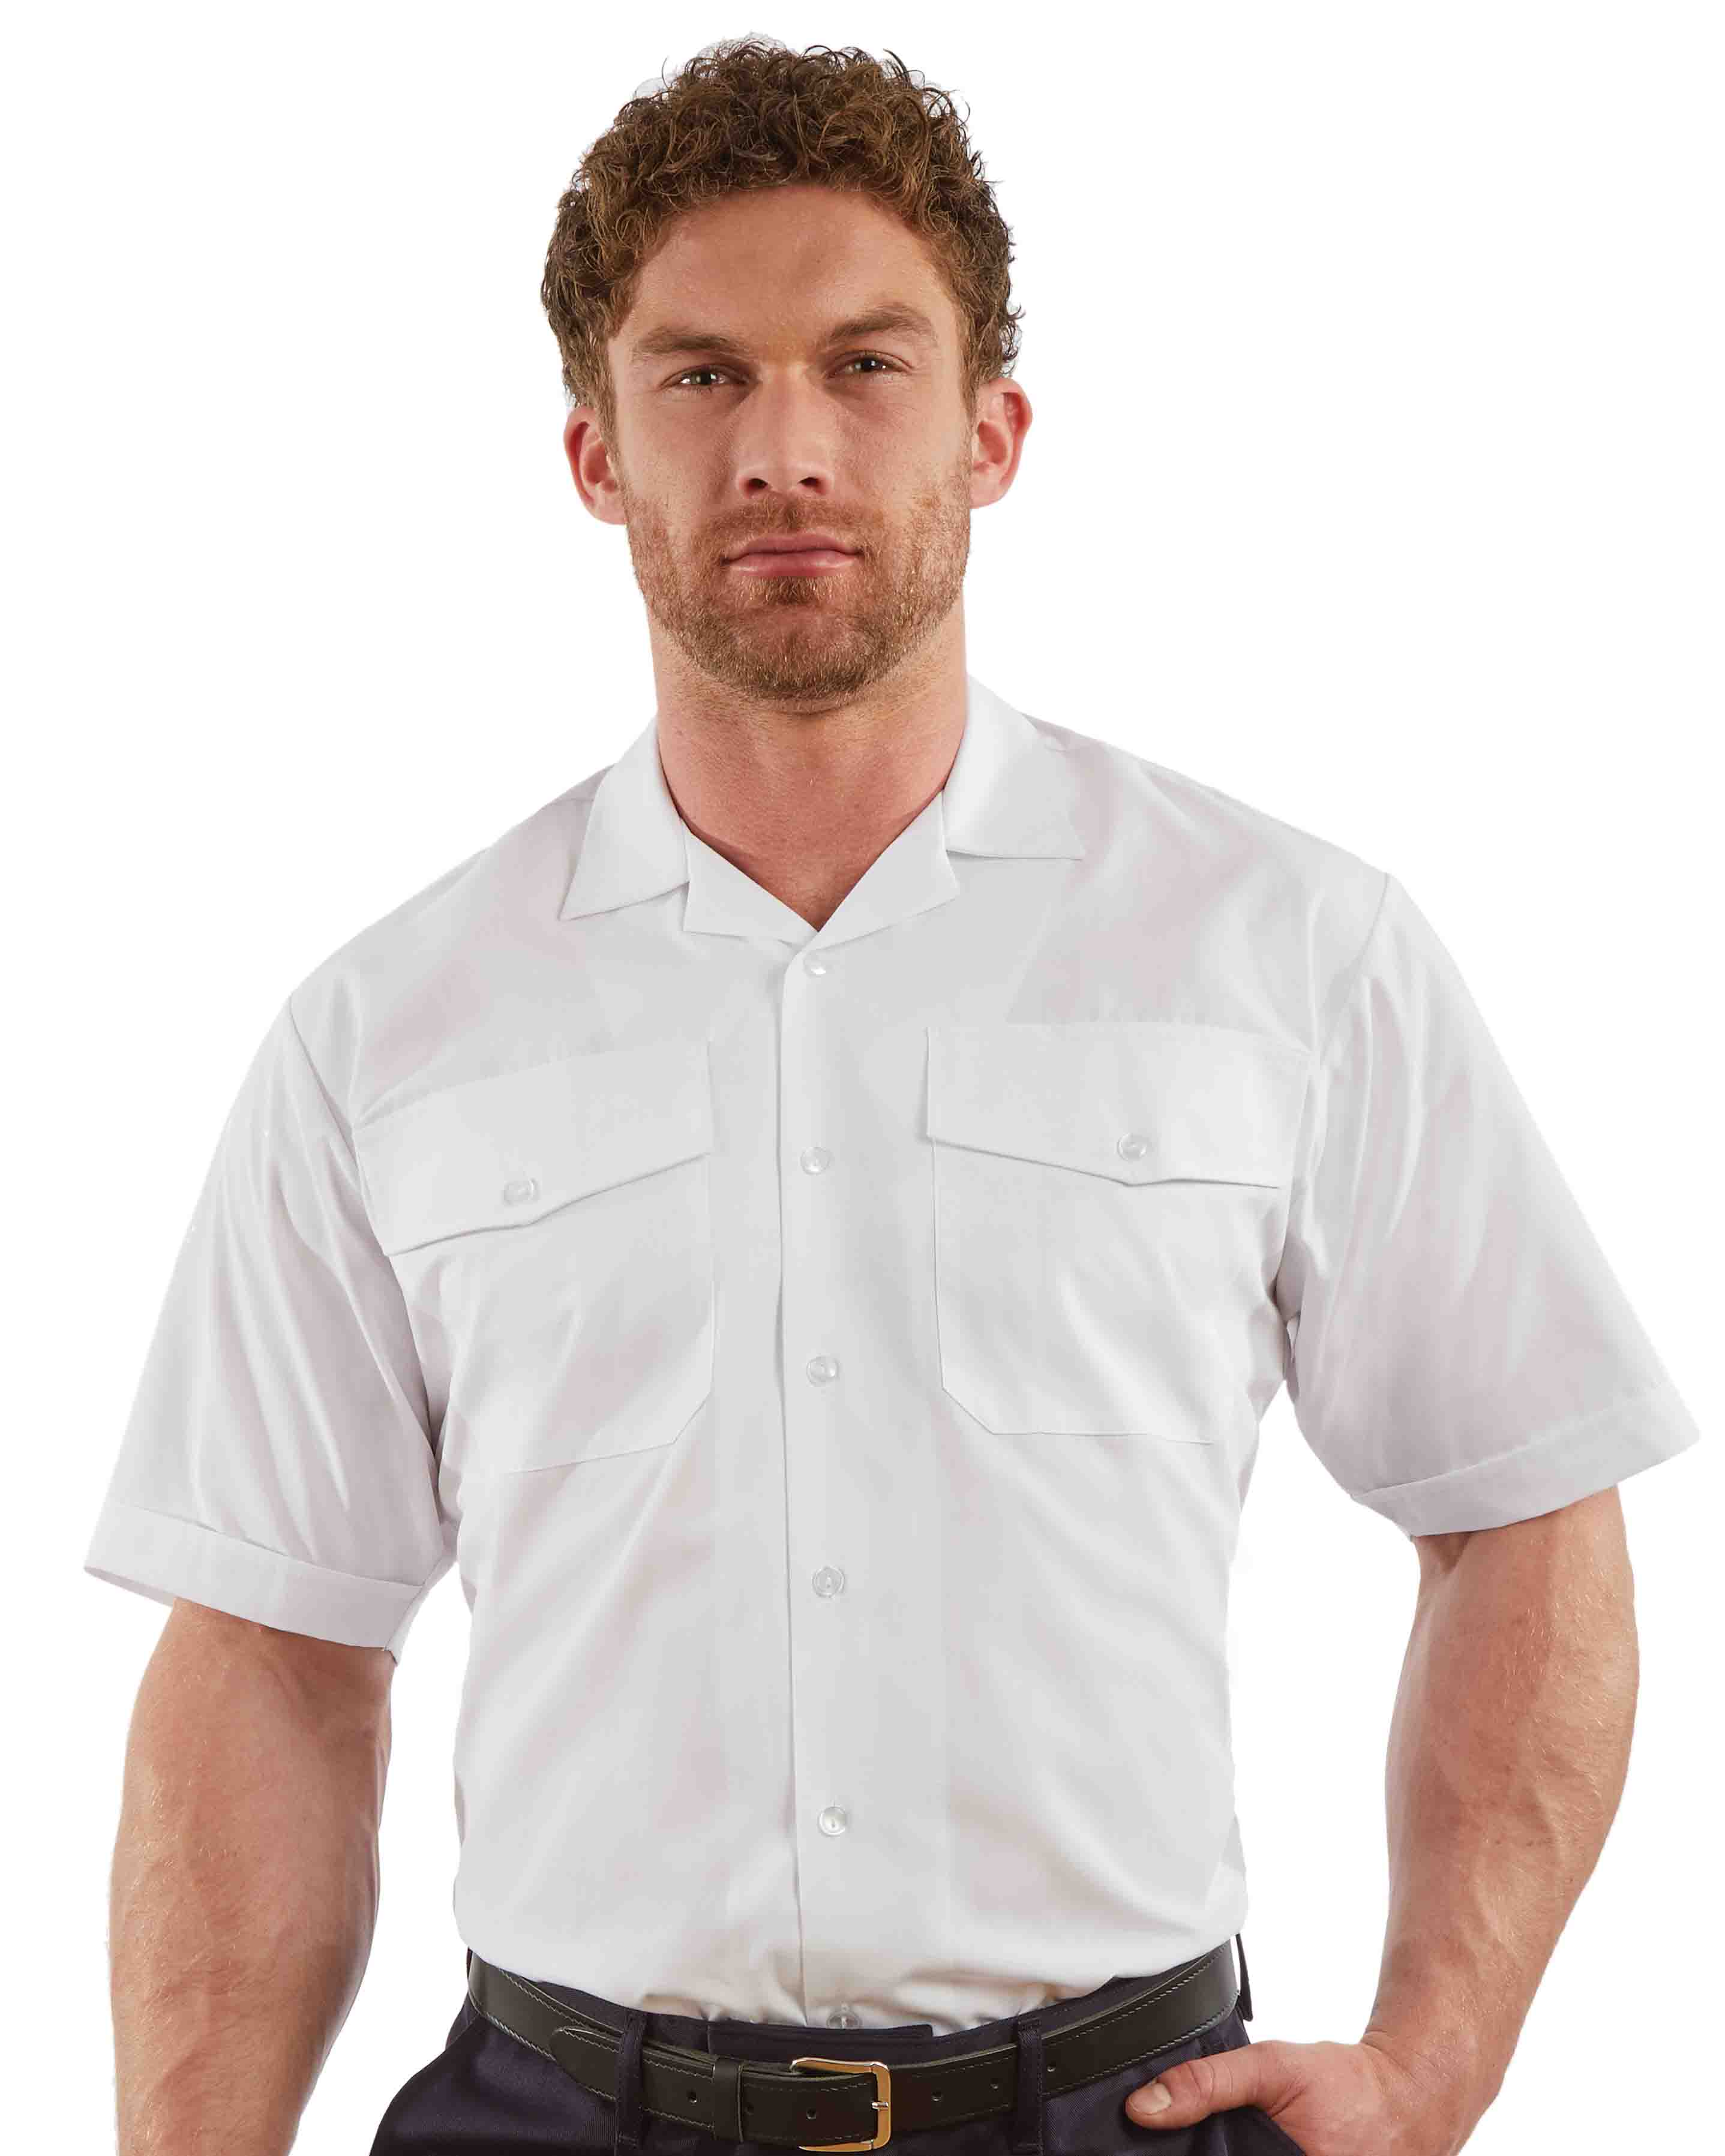 Men’s Short Sleeve Fire Shirt – White